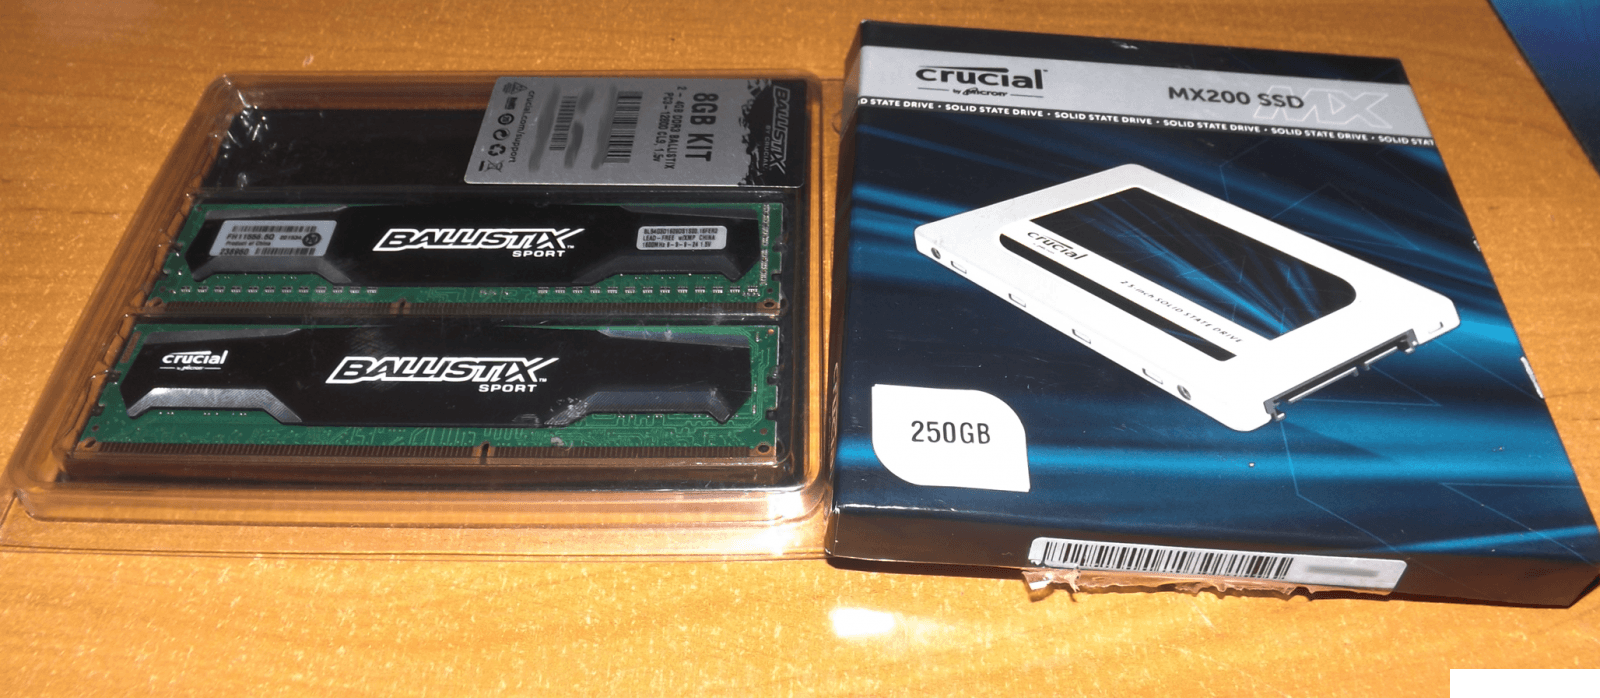 SSD Crucial MX200 250GB + Crucial Ballistix 2x4GB